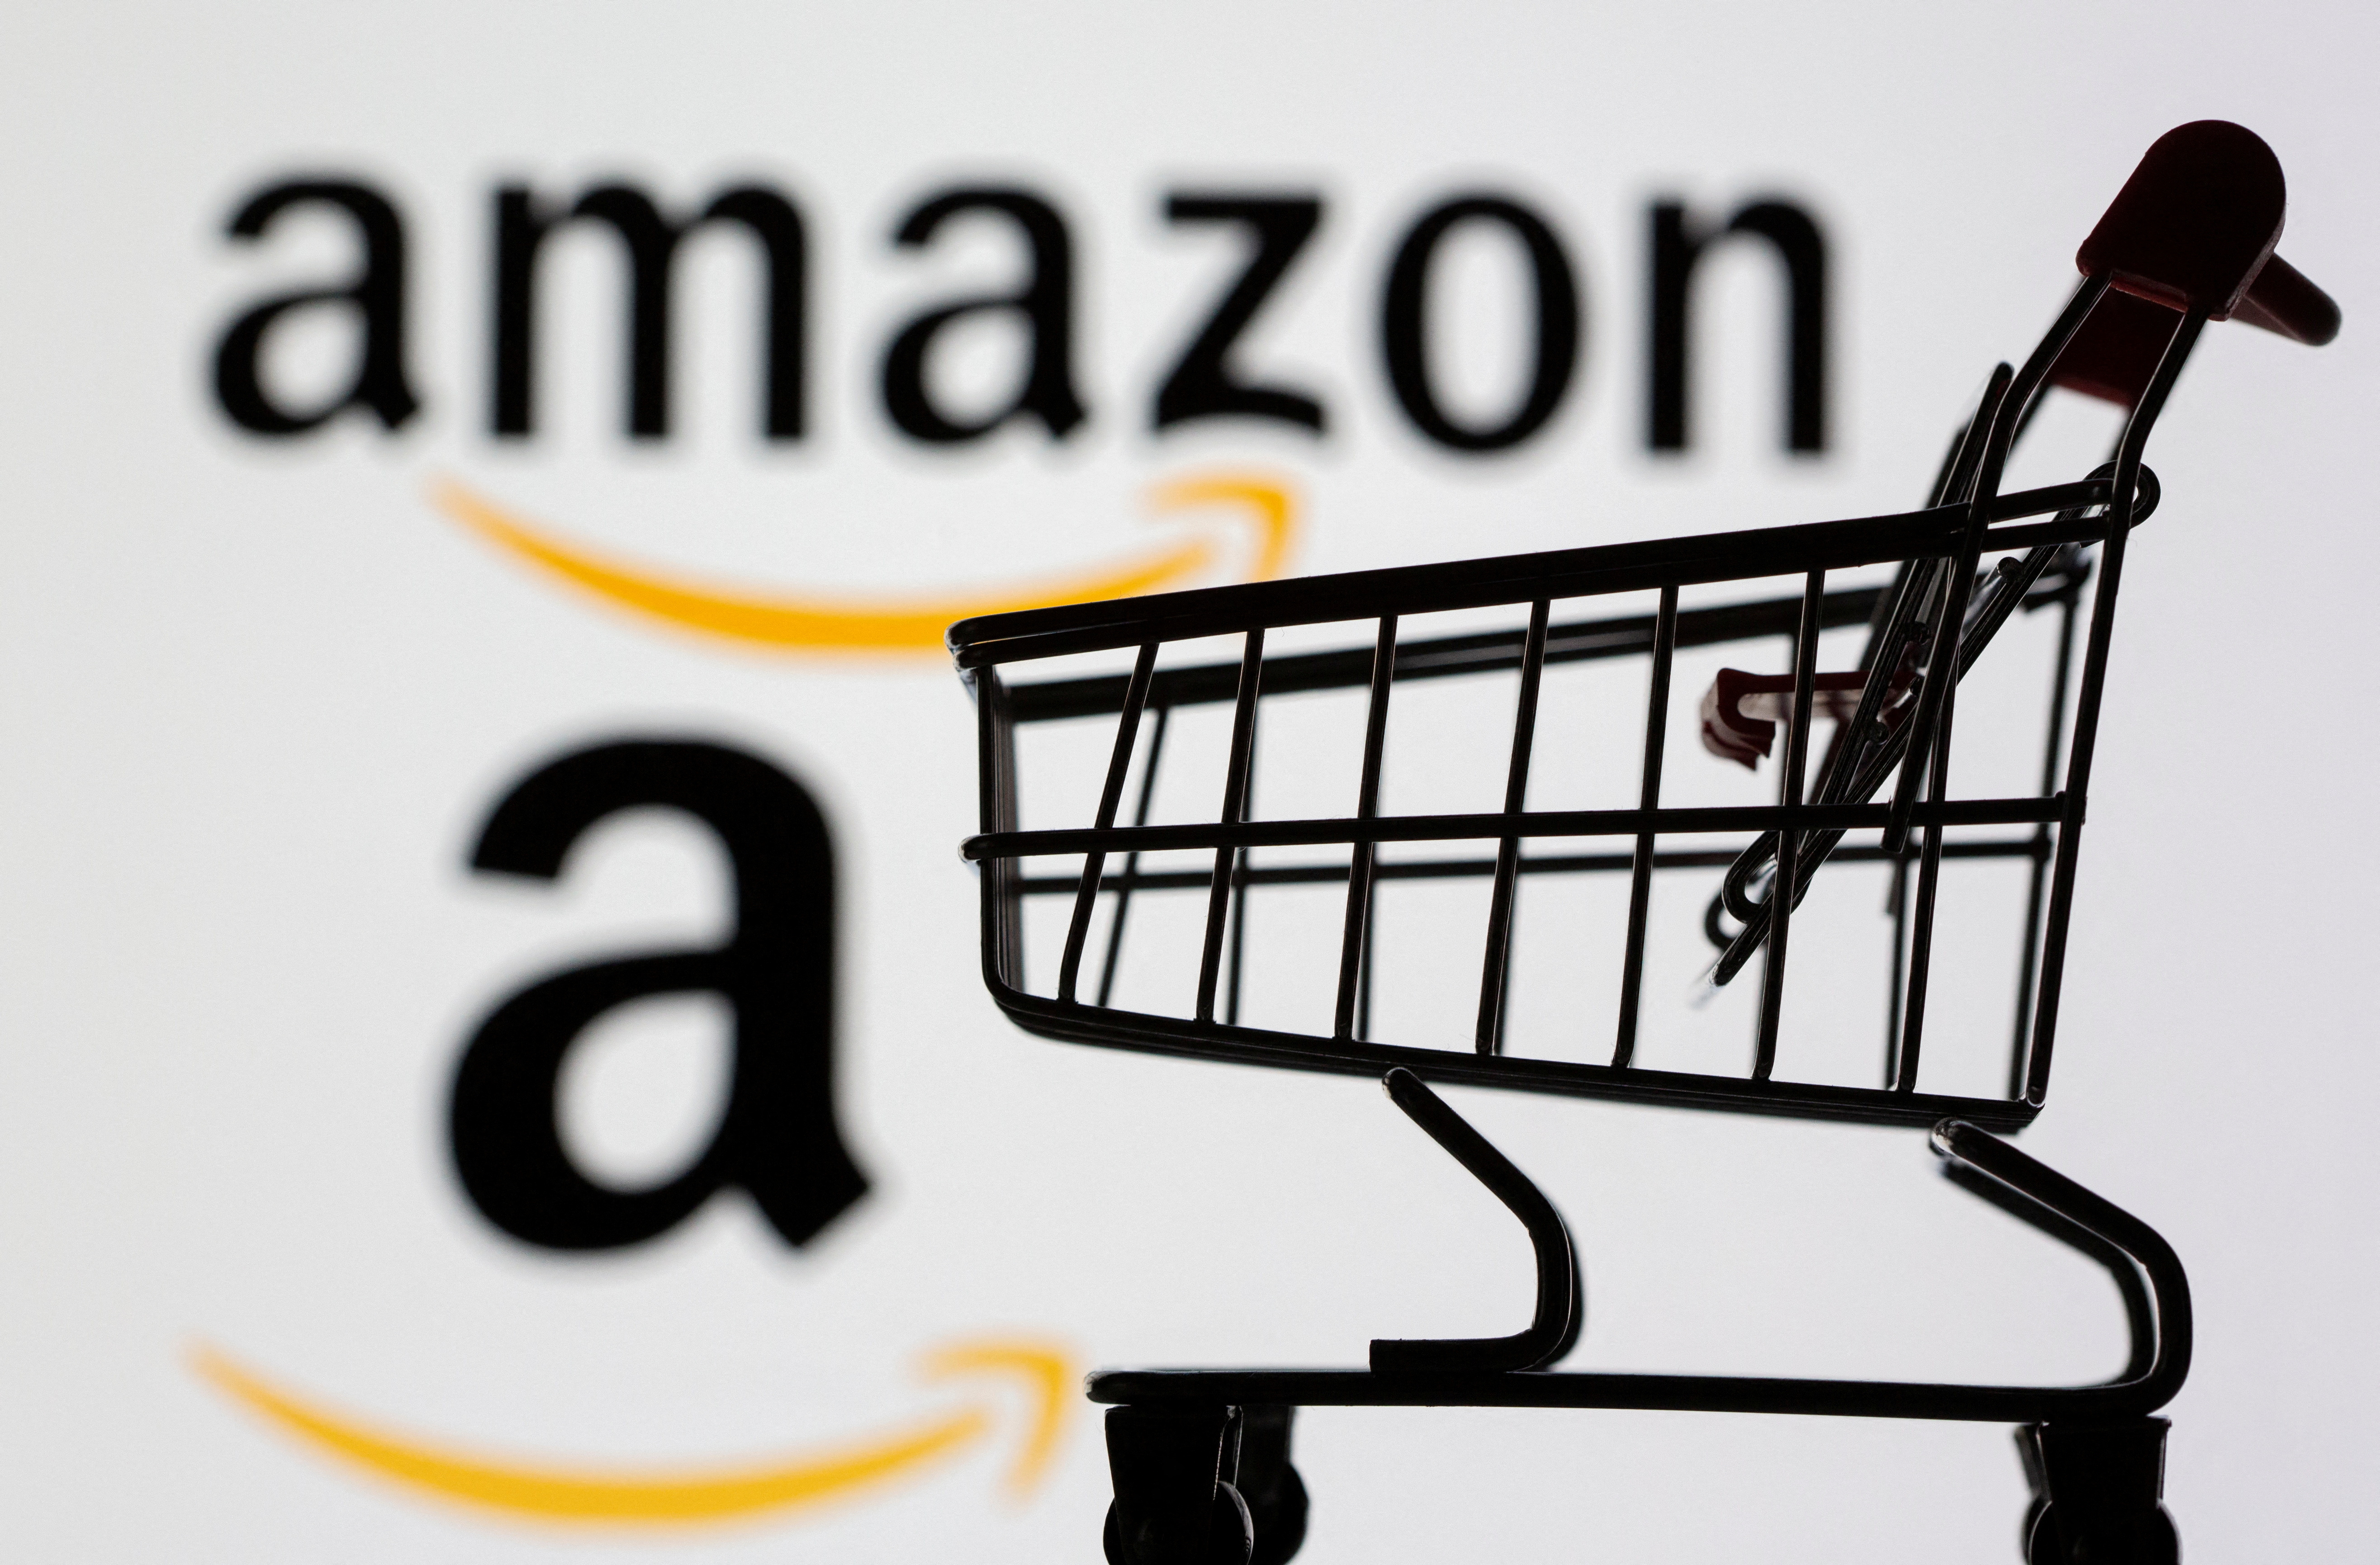 Amazon incluirá la inteligencia artificial en su tienda virtual para comparar productos y realizar sugerencias. (REUTERS/Dado Ruvic)